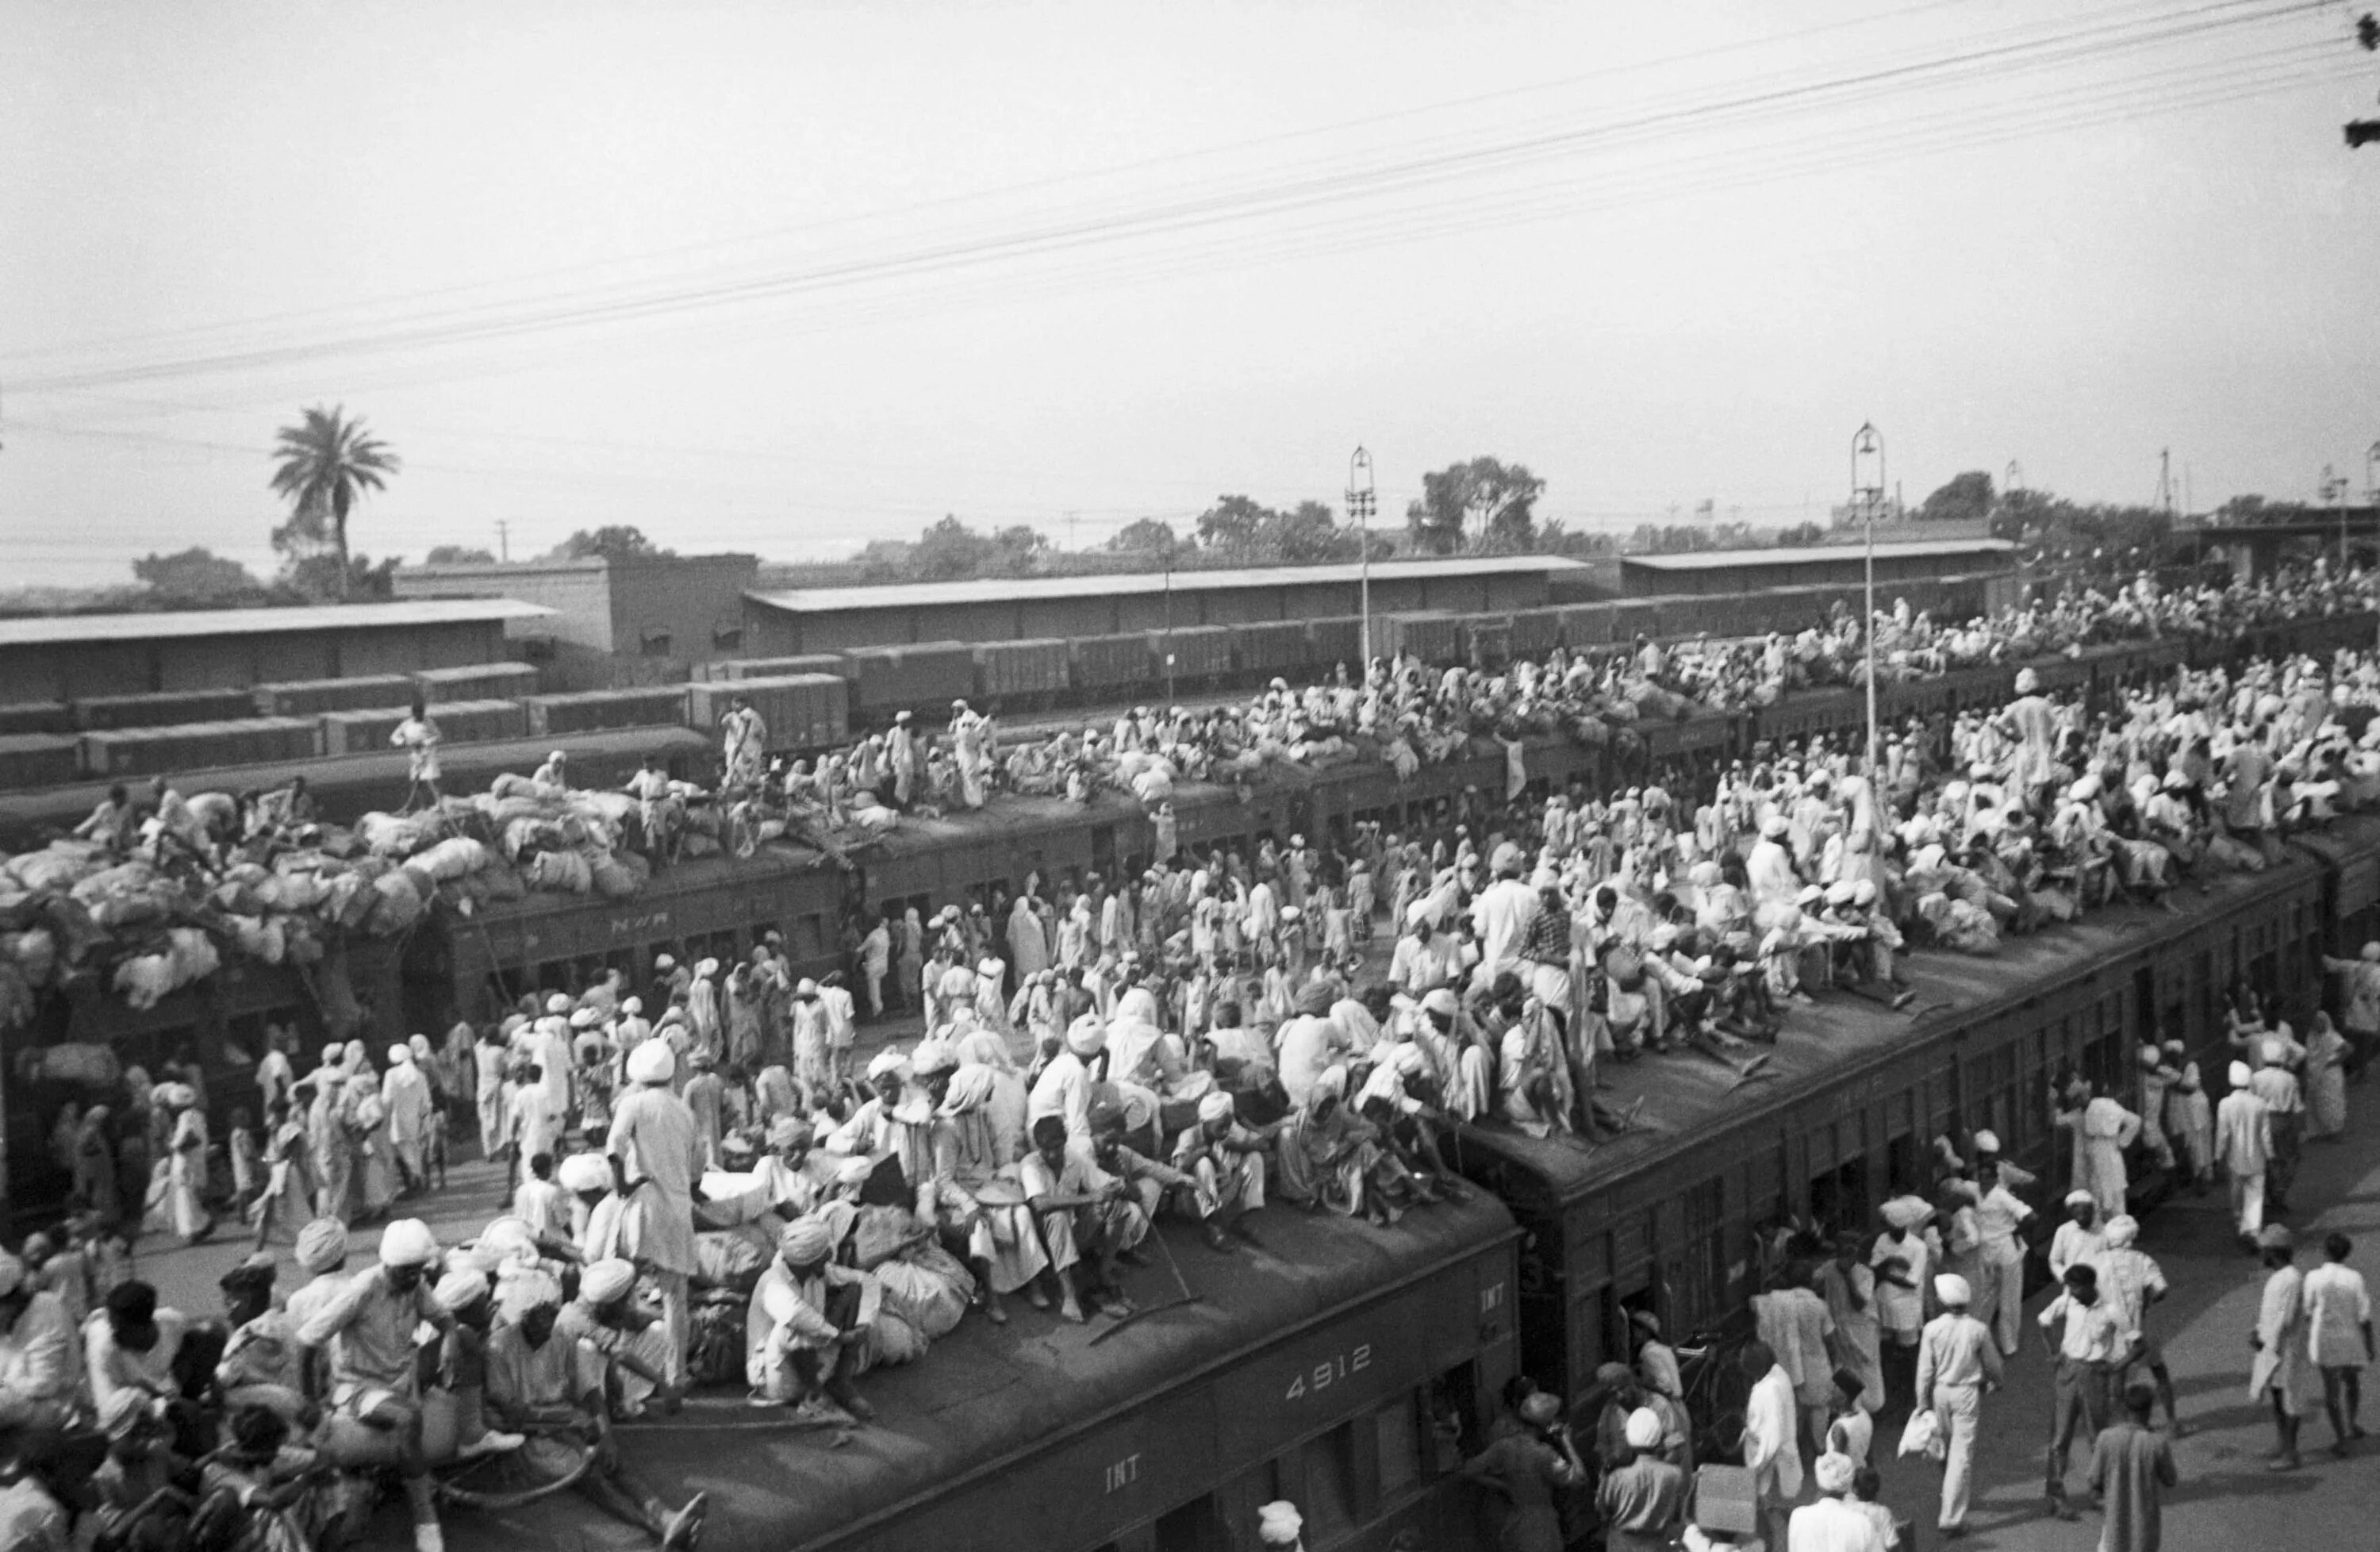 The people's movement. Независимость Индии 1947. Разделение британской Индии 1947. Пакистан 1940. Независимость Индии 1947 фото.